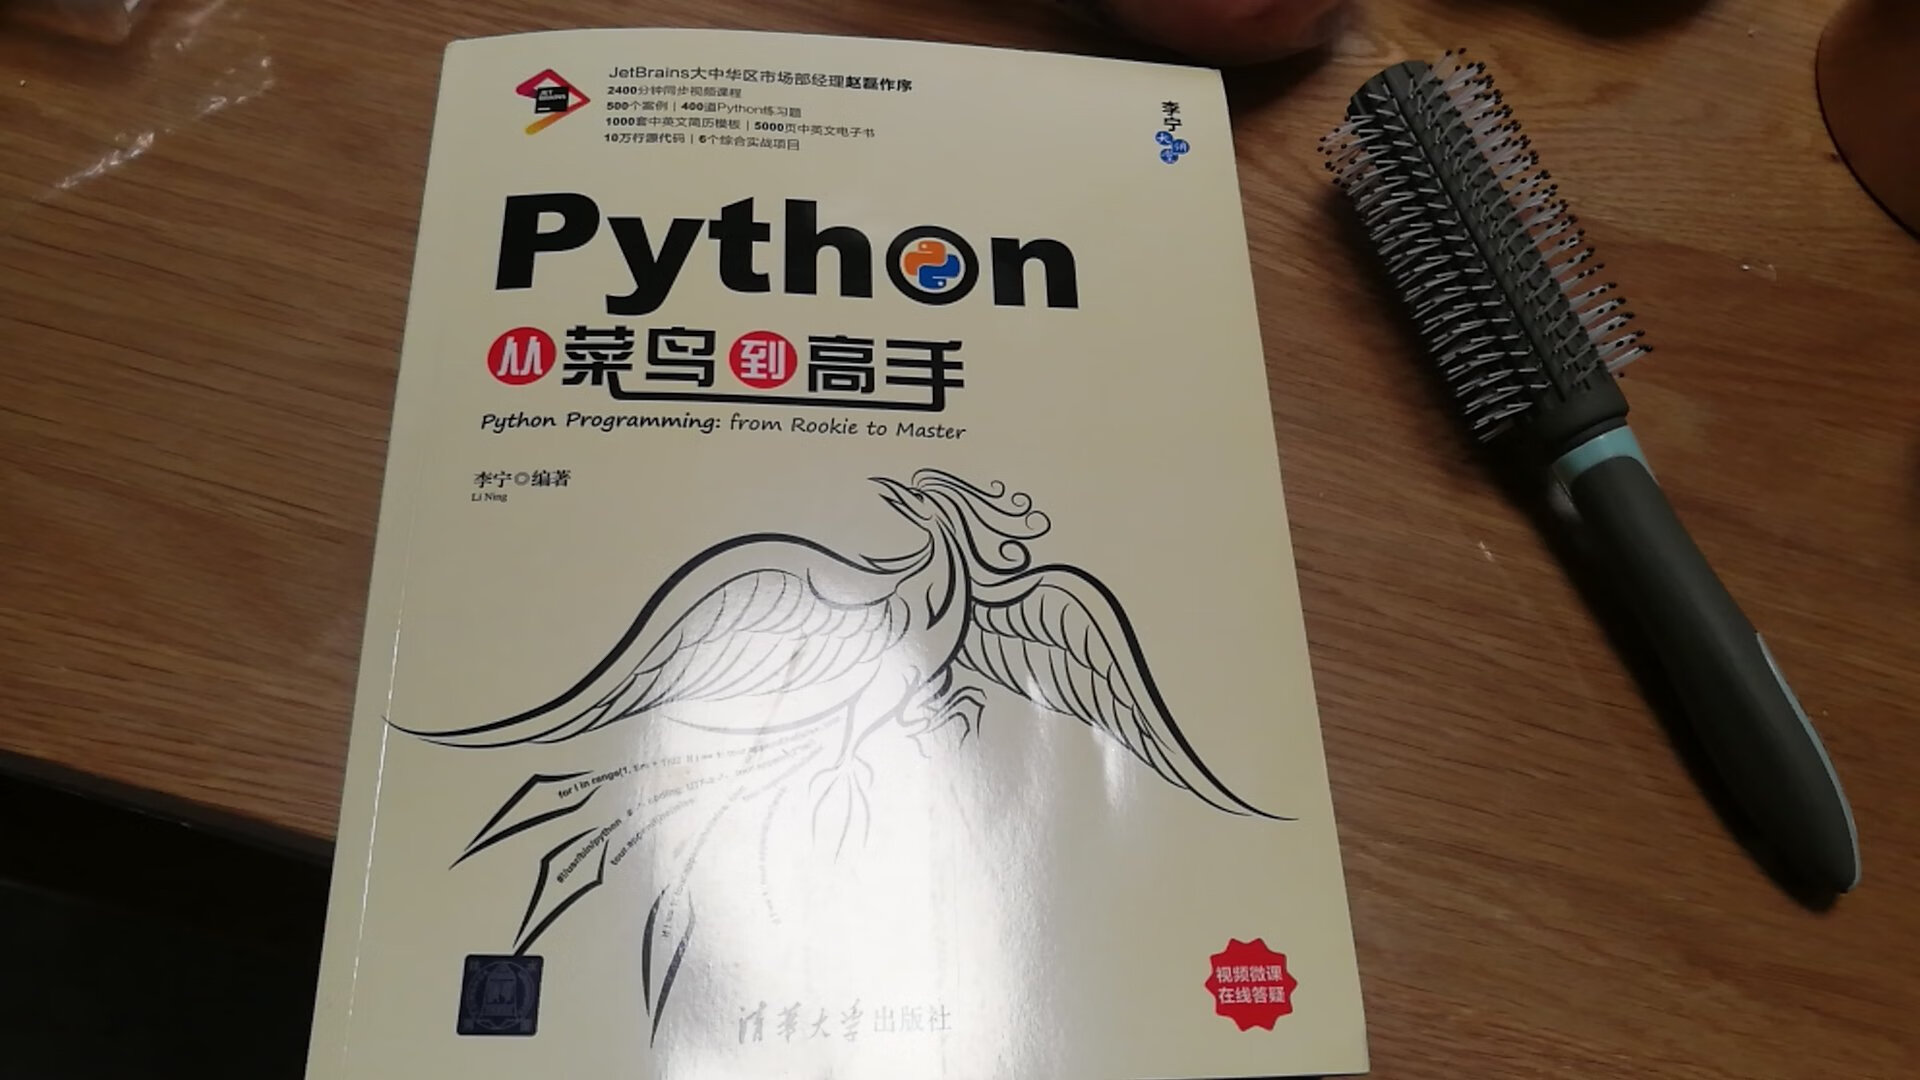 买了一本python 打算自己学习一下 这本书总共有六百多页 介绍的挺详细的 视频资源啥的还没用过 最近比较忙 也没咋学习 速度很快 很满意 需要的朋友可以购买 学习一下python 还是很有用的